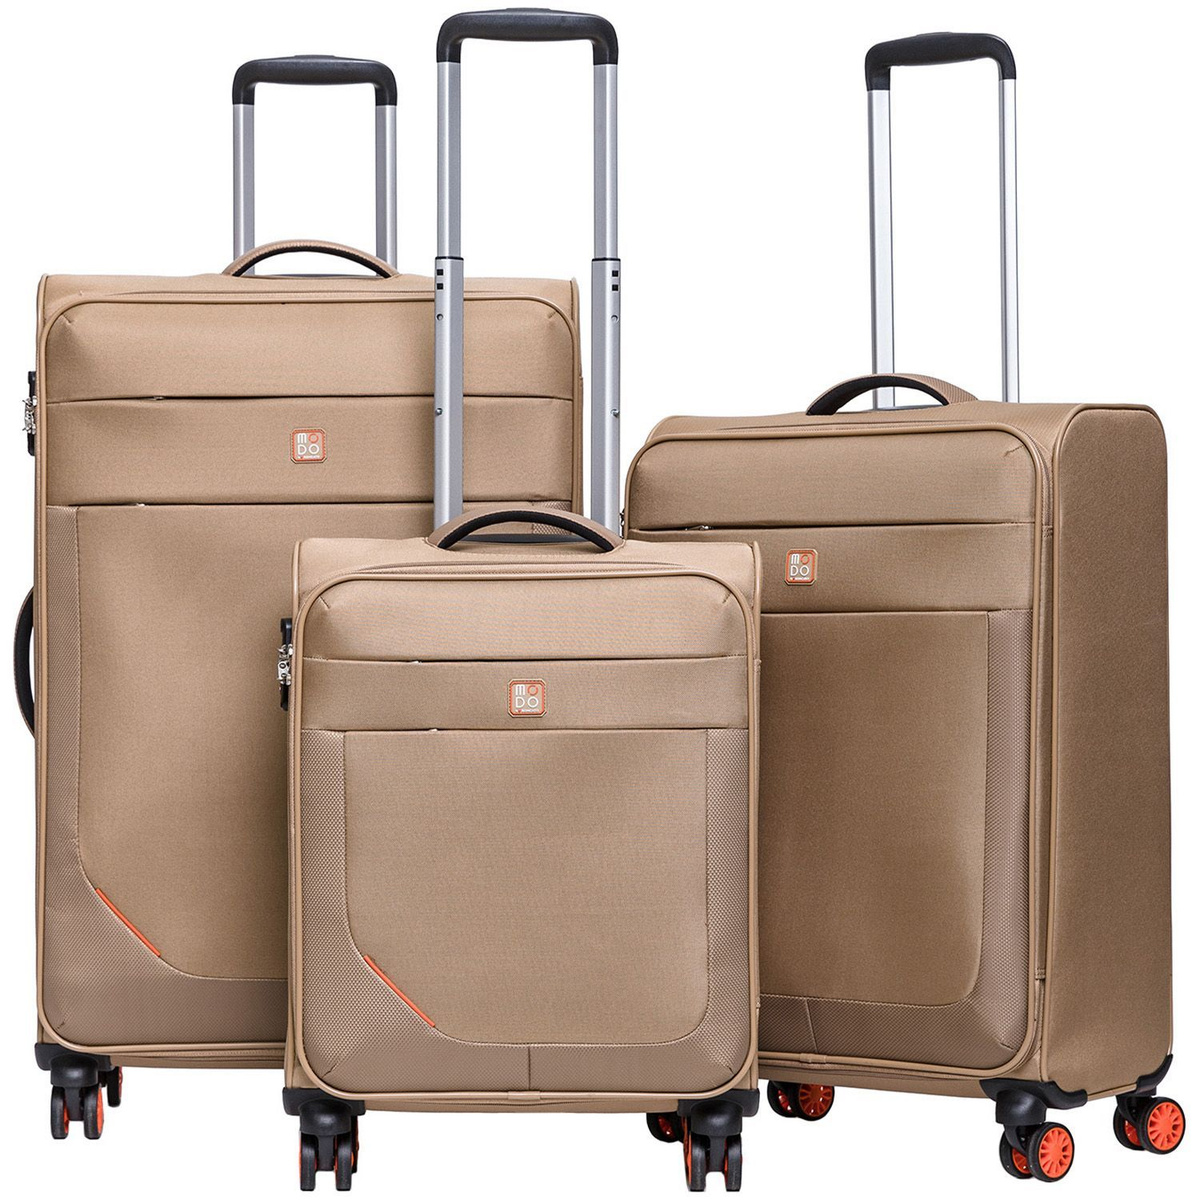 Размер чемодана средний M (56-70 см), что оптимально для путешествий на одну-две недели.